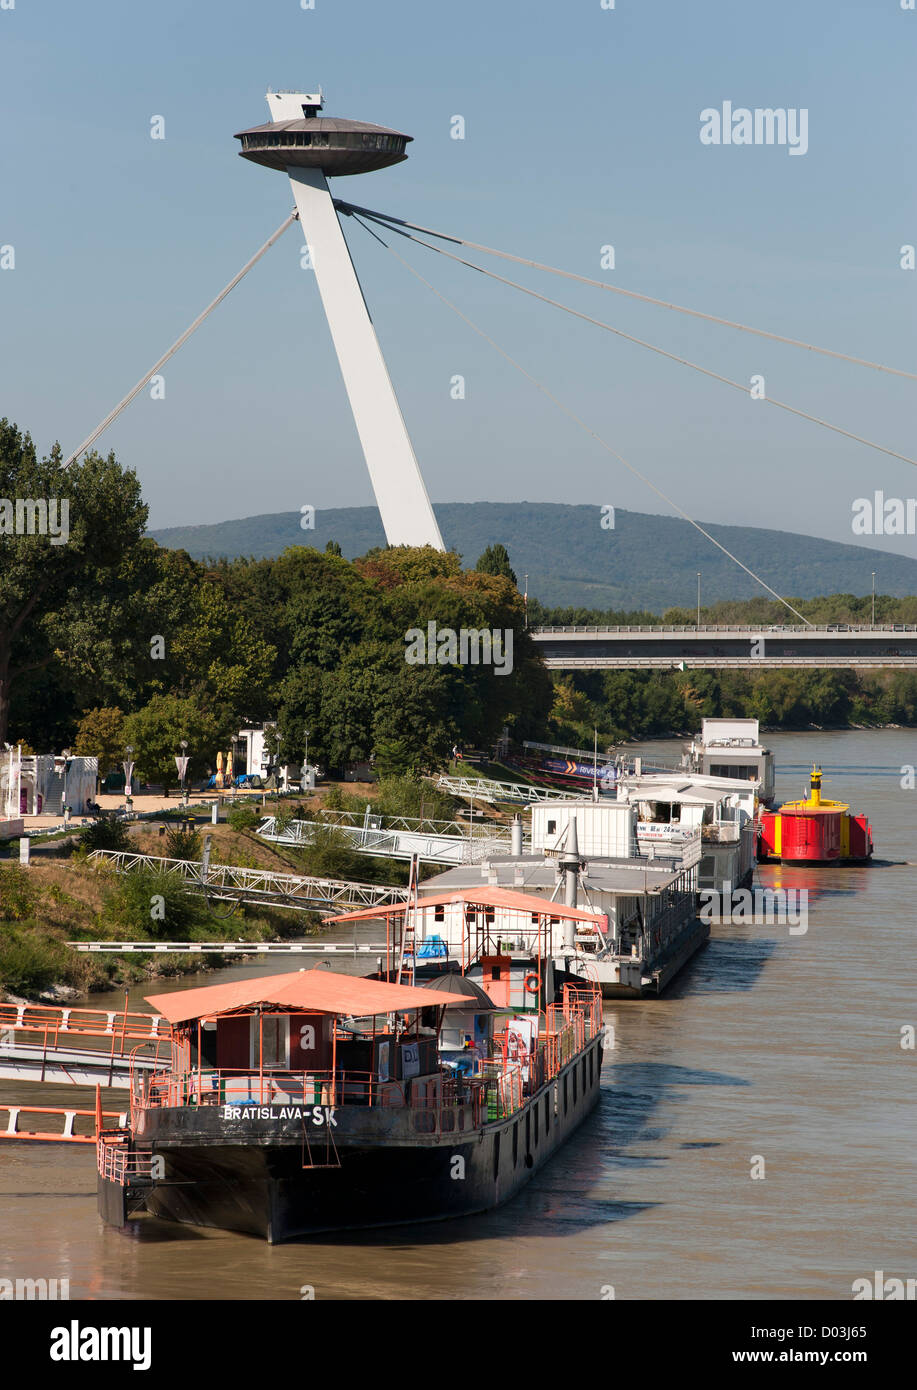 La piattaforma di osservazione e la struttura del nuovo ponte (Novy Most) oltre il Fiume Danubio a Bratislava, la capitale della Slovacchia. Foto Stock